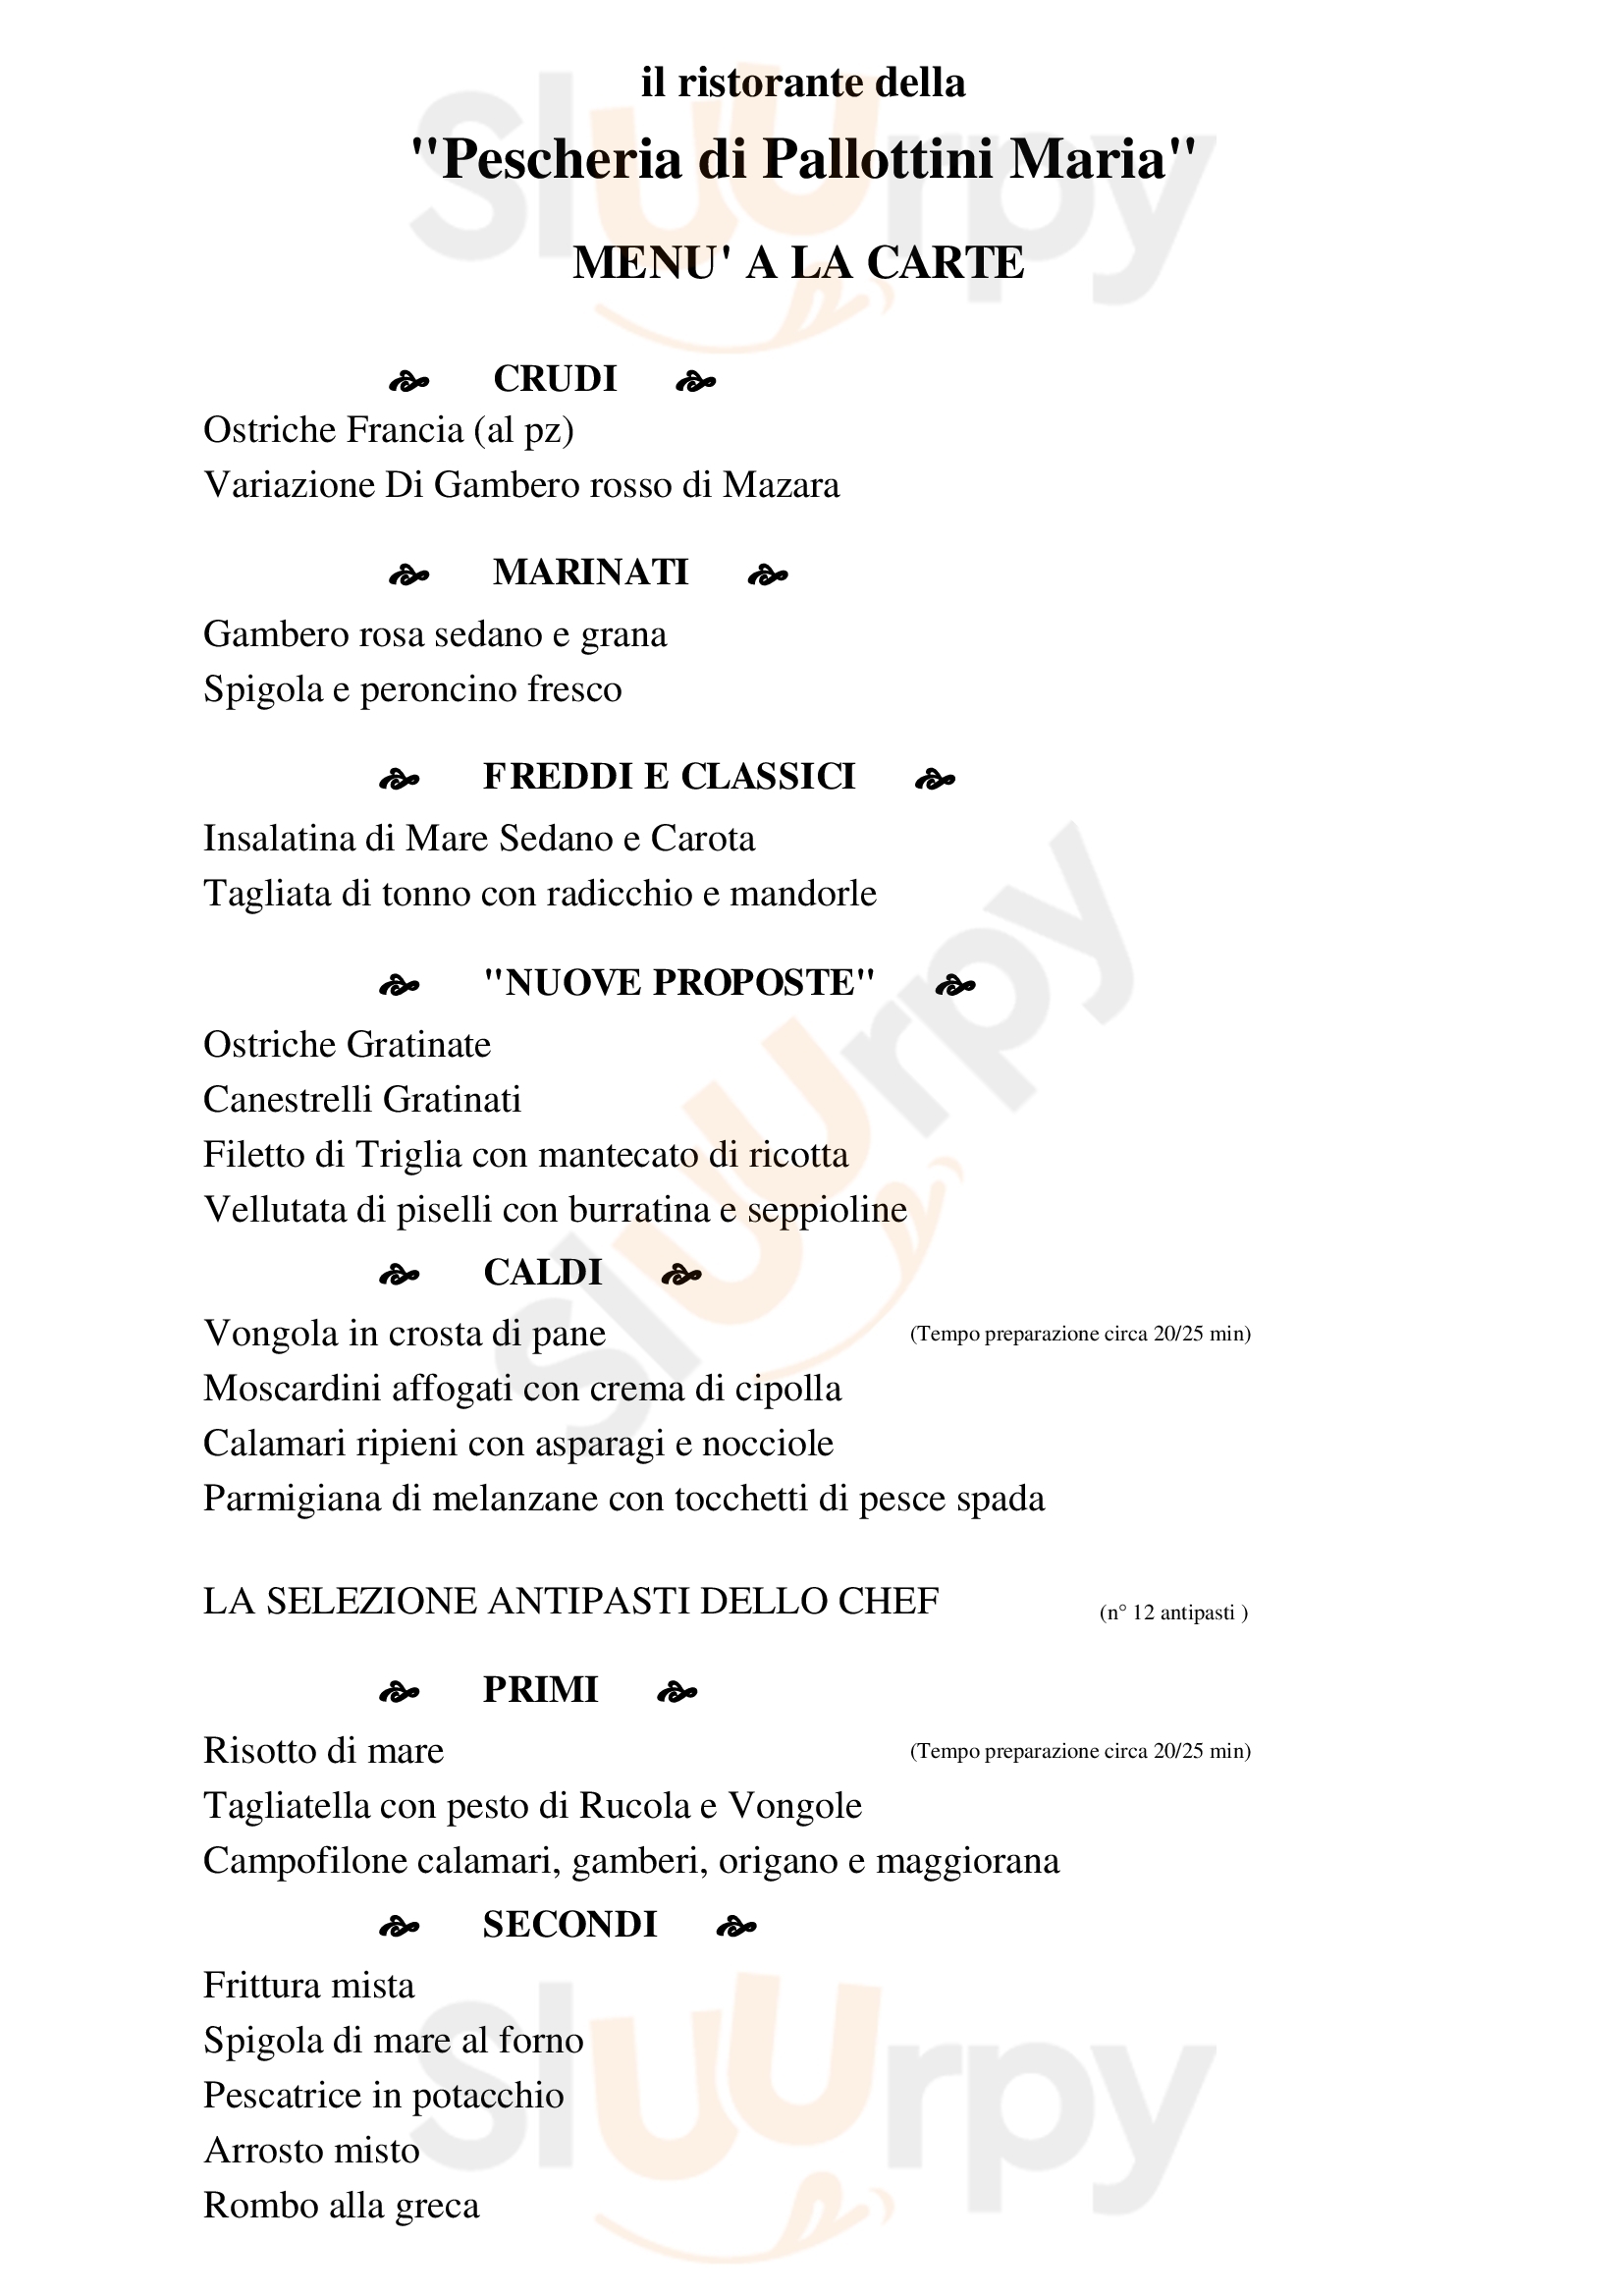 Ristorante-Pescheria Pallottini Maria San Benedetto Del Tronto menù 1 pagina